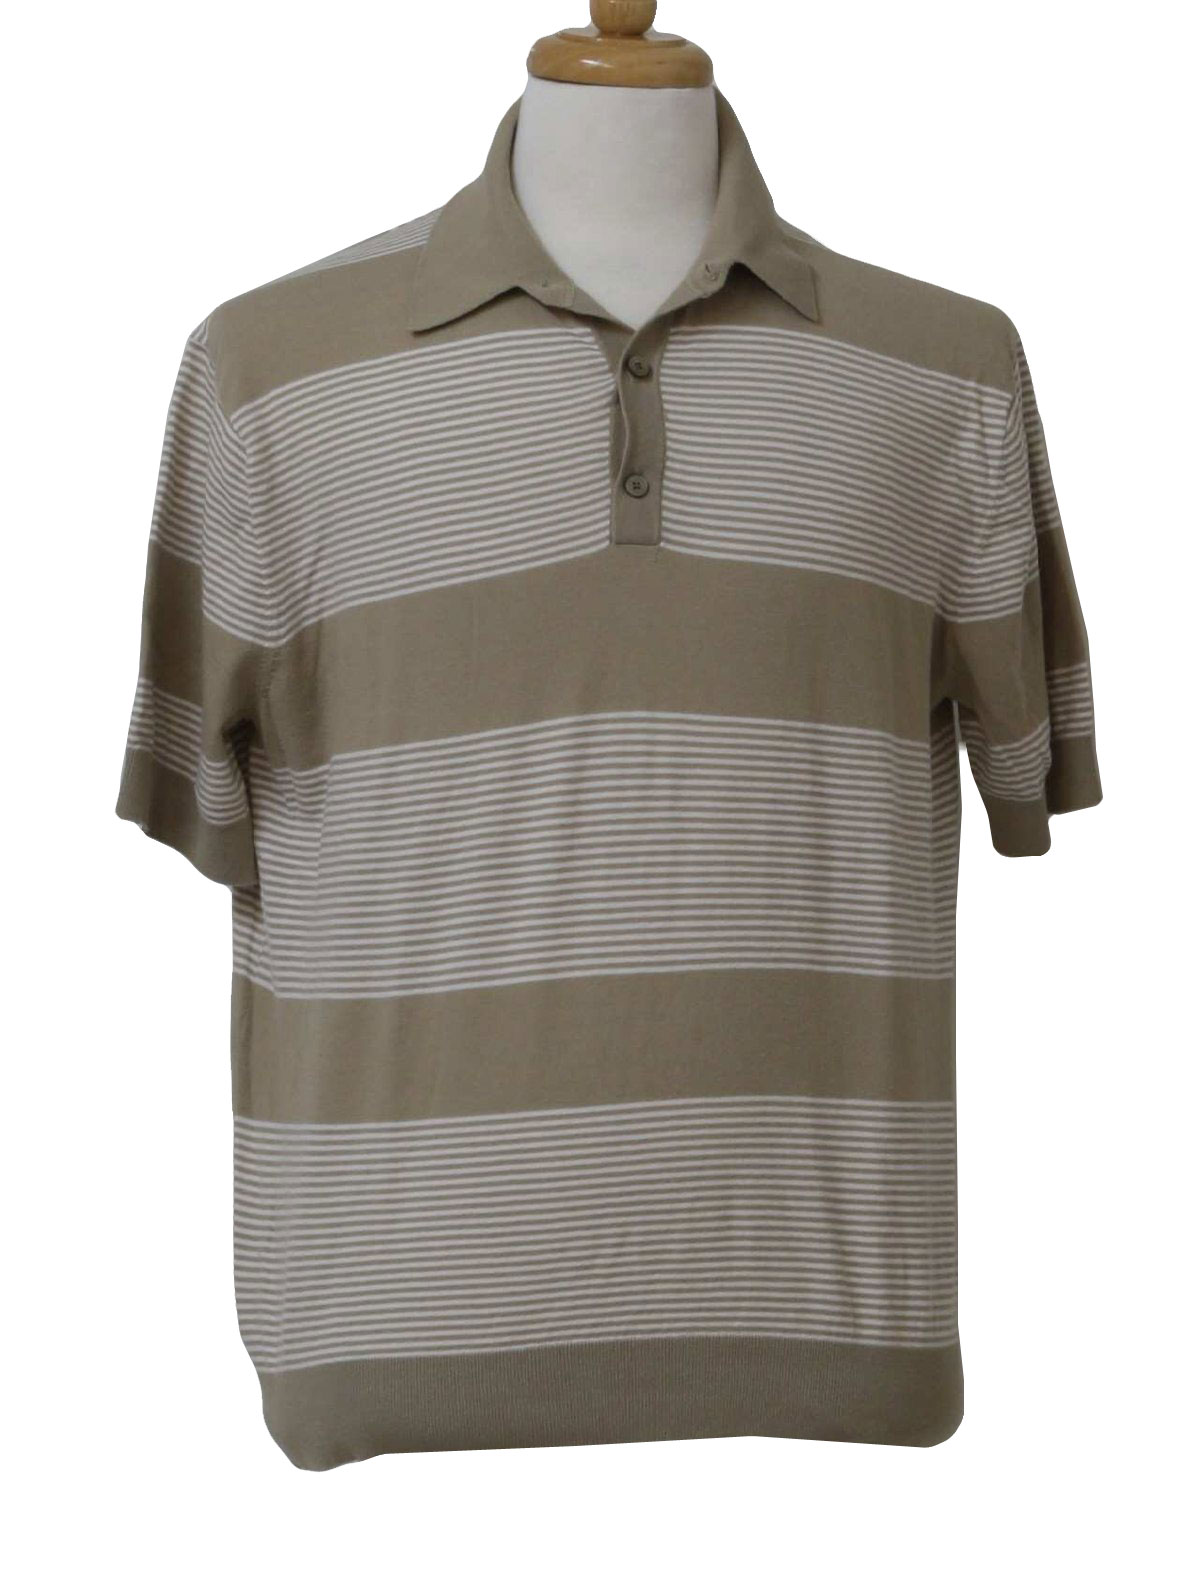 Retro 1980's Knit Shirt (Murano) : 80s -Murano- Mens taupe and white ...